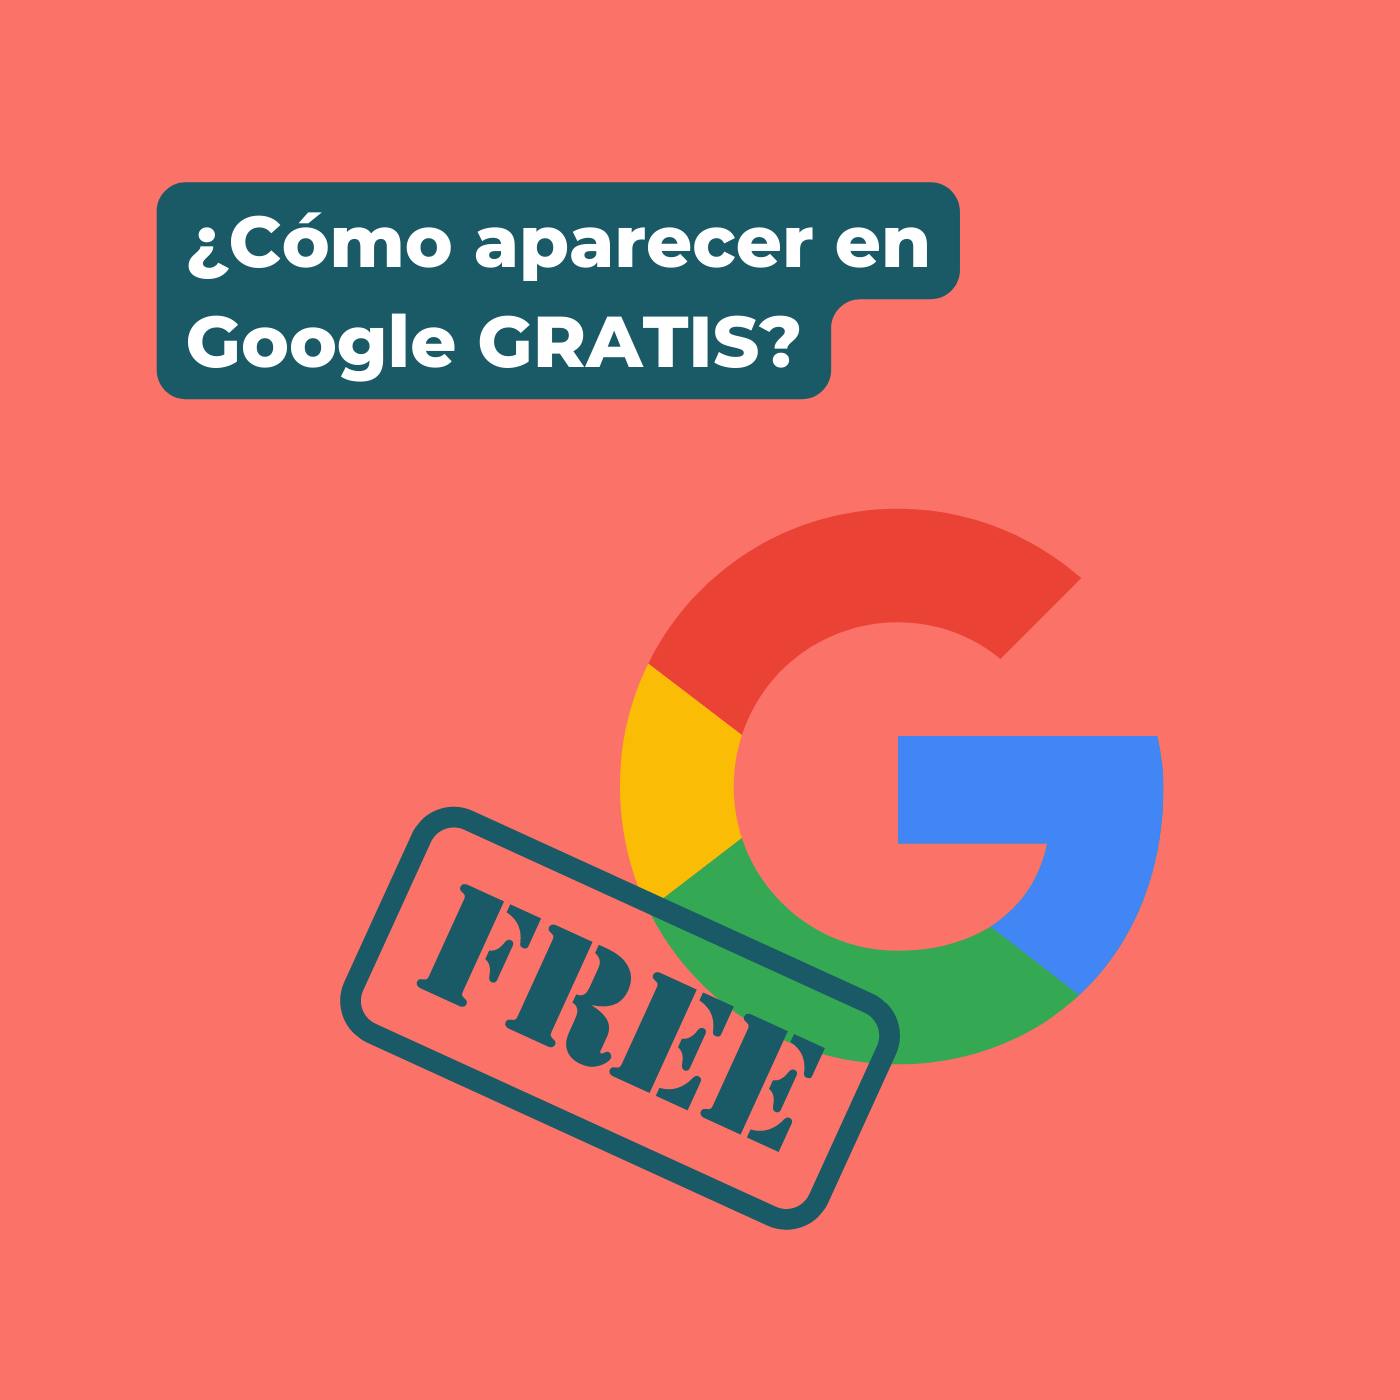 Pilar Estúpido Escoger ¿Cómo aparecer en Google gratis? Posiciona tu web sin gastar dinero